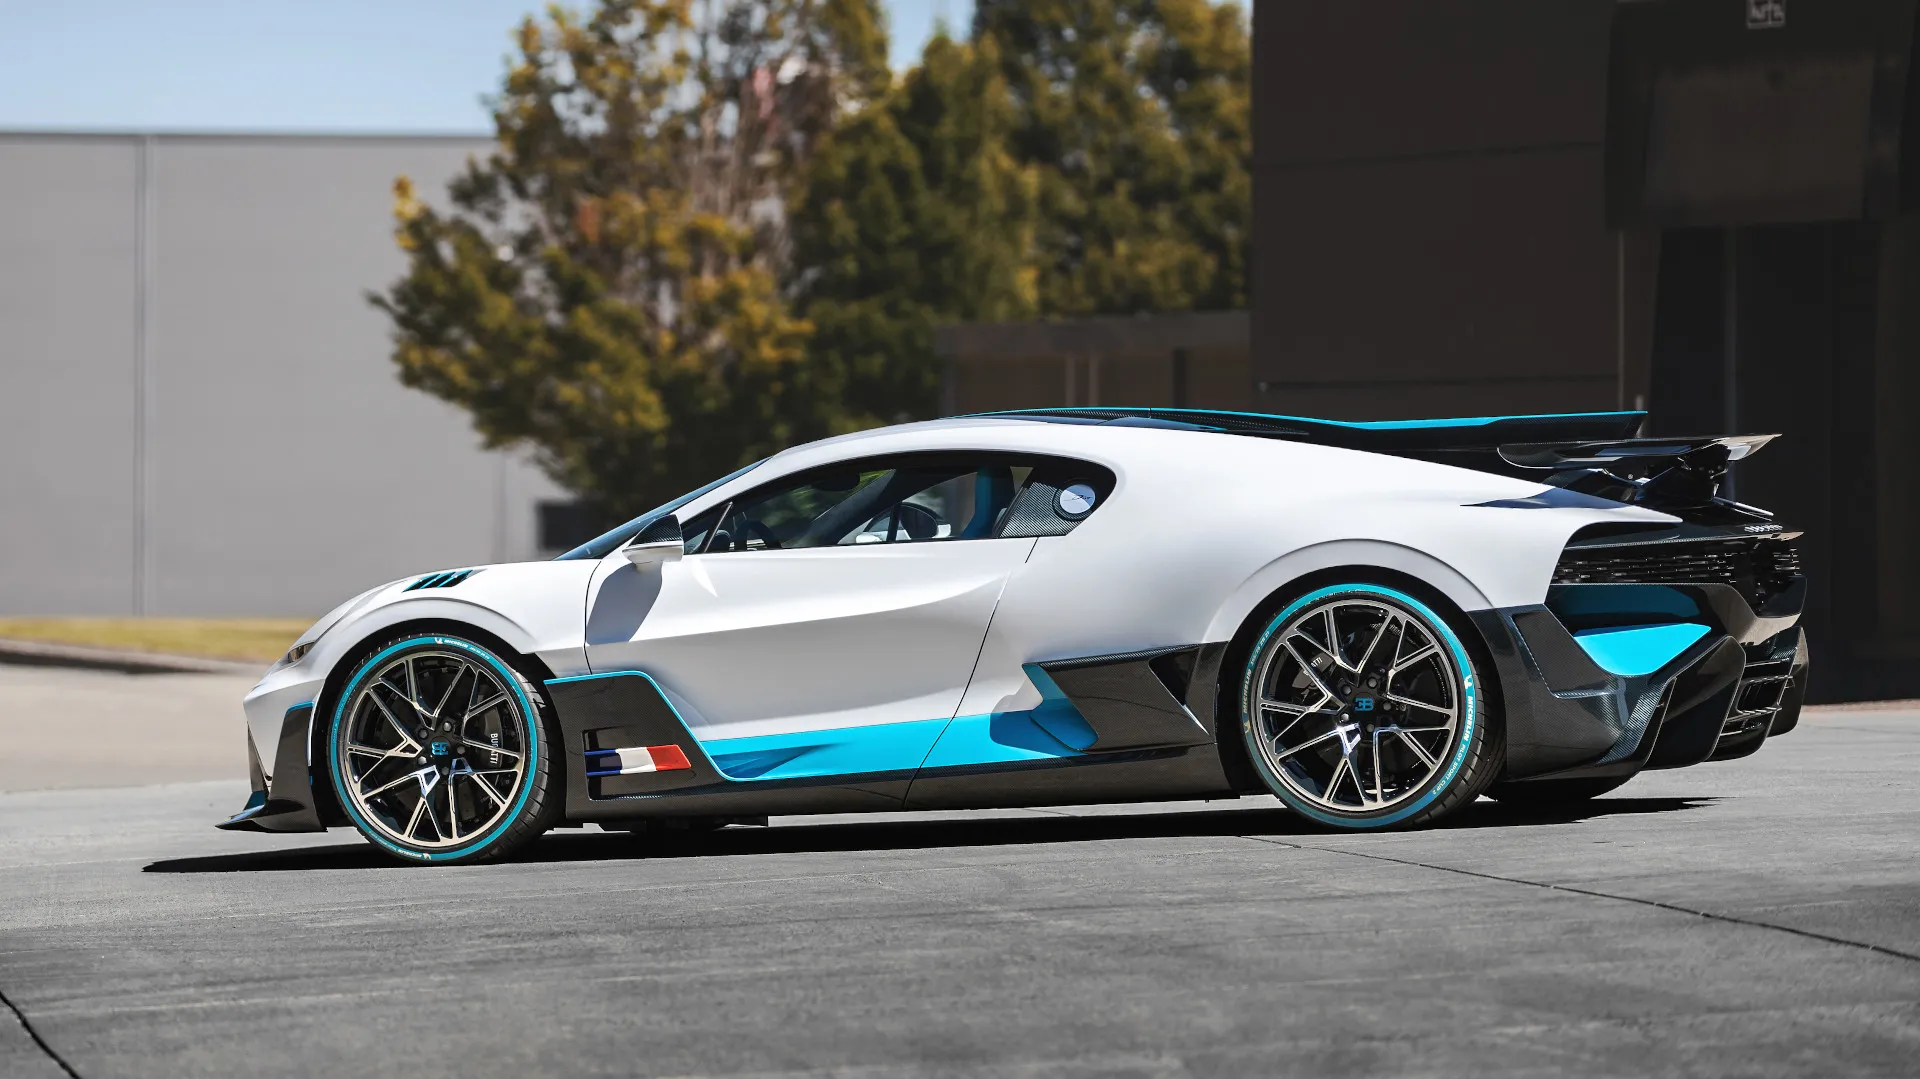 ¿Tienes 10 millones de euros sueltos? Pues quizá te interese este Bugatti Divo a la venta en Austria